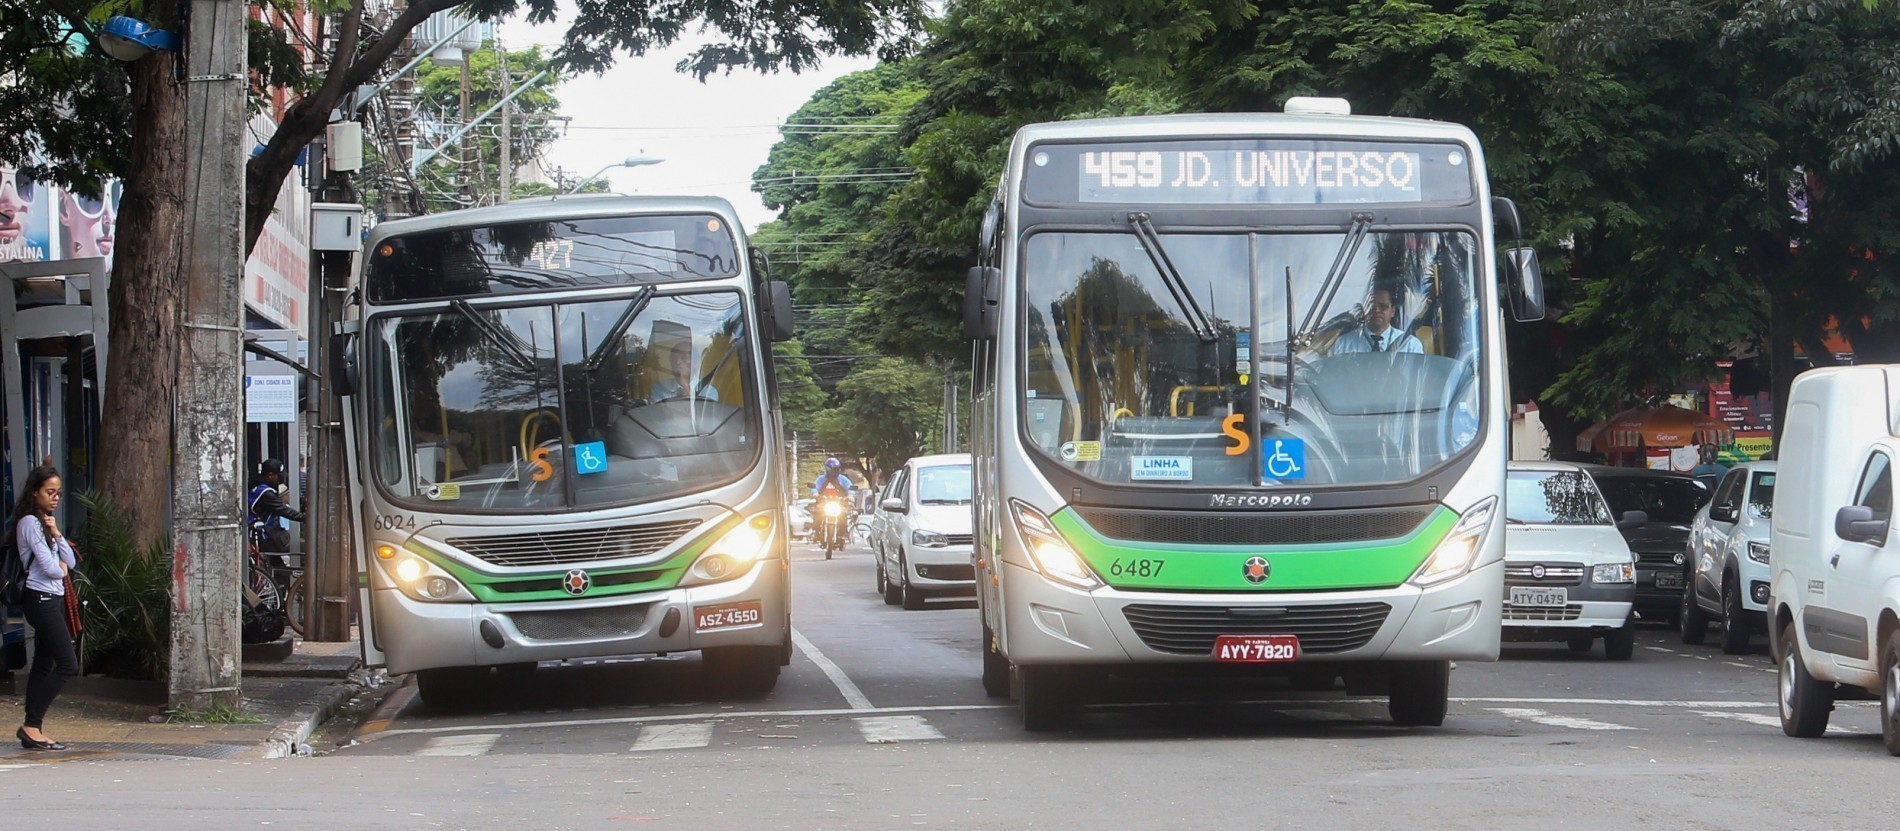 Transporte coletivo em Maringá será gratuito no dia das eleições, diz prefeitura